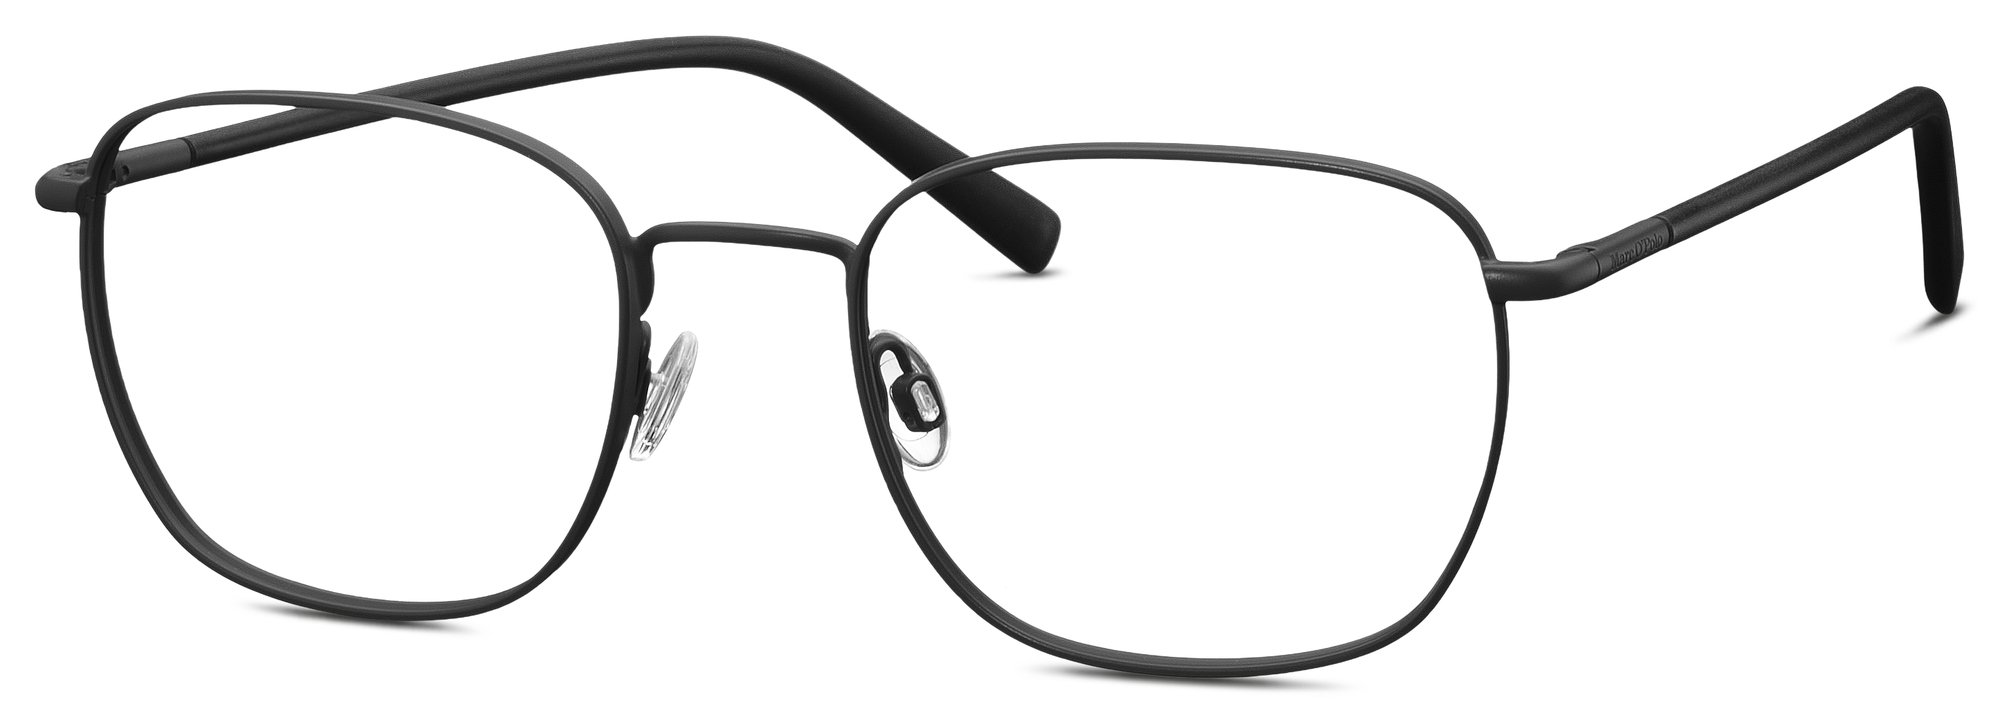 Das Bild zeigt die Korrektionsbrille 502170 11 von der Marke Marc O‘Polo in schwarz.